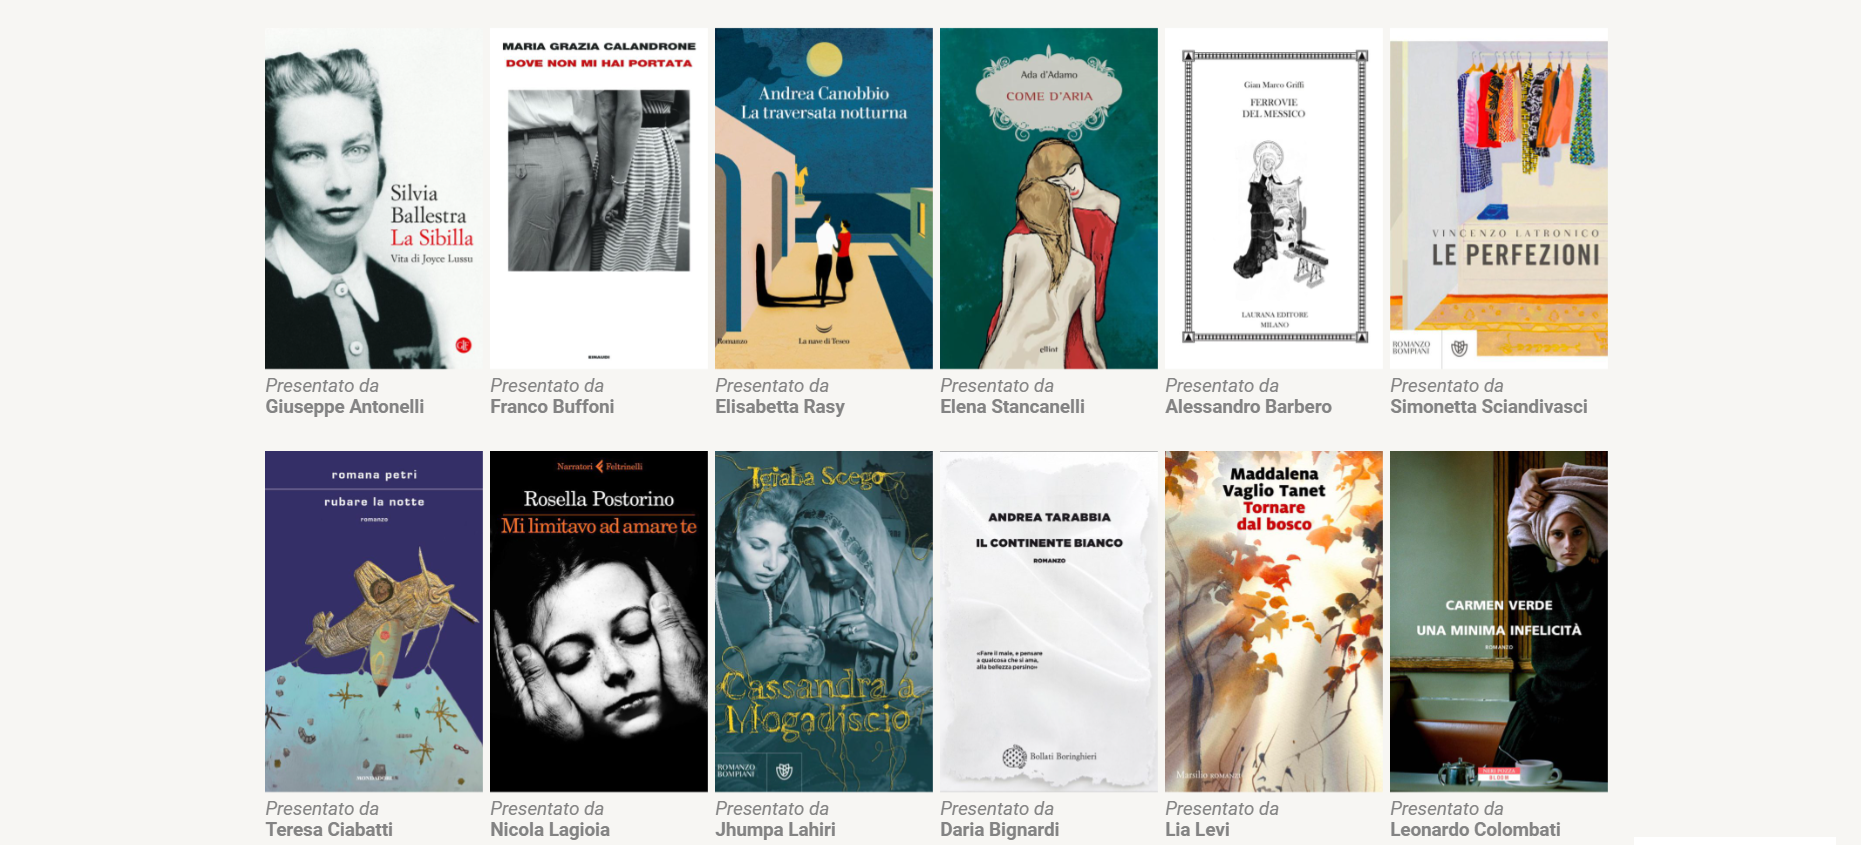 Ecco i dodici libri candidati alla LXXVII edizione del Premio Strega